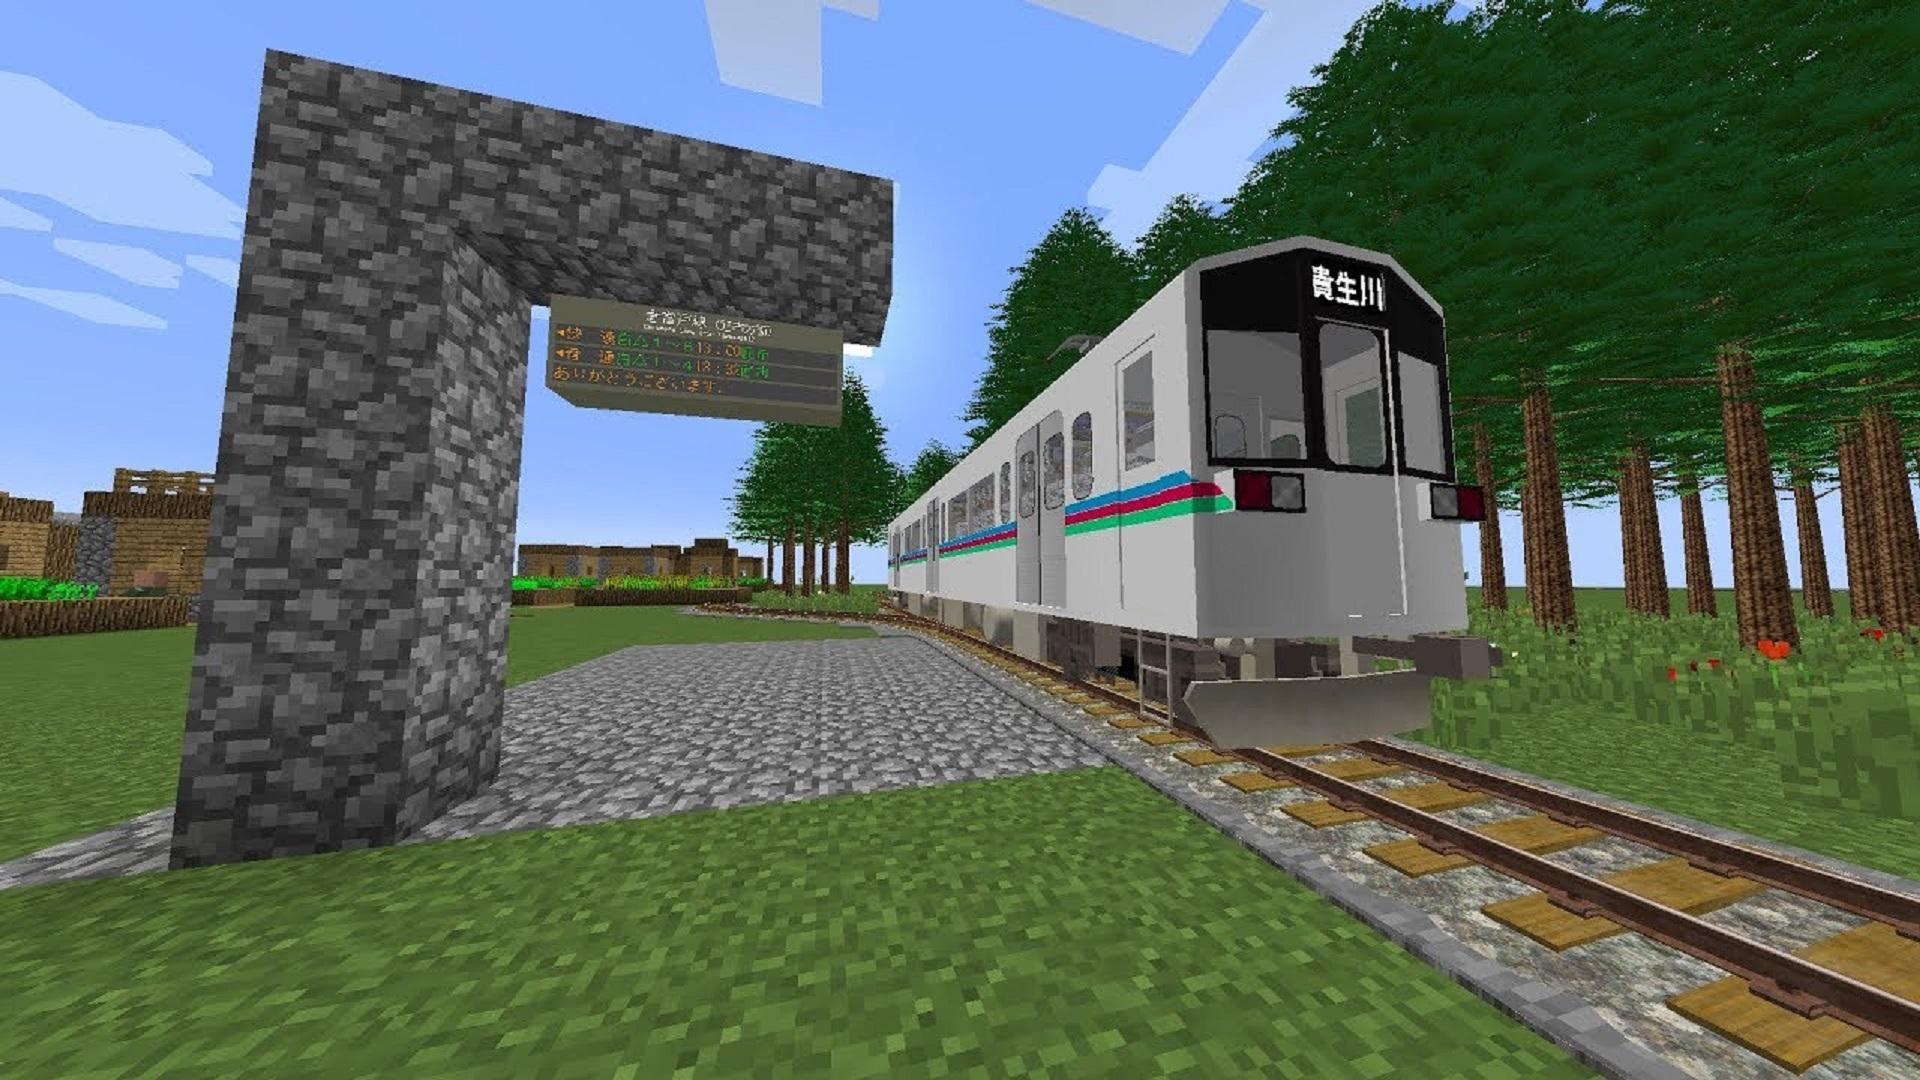 Поезд в майнкрафте на телефон. Станция RTM 1.12.2. RTM (real Train Mod) Эр 2. Traincraft 1.12.2. Real Train Mod 1.12.2.